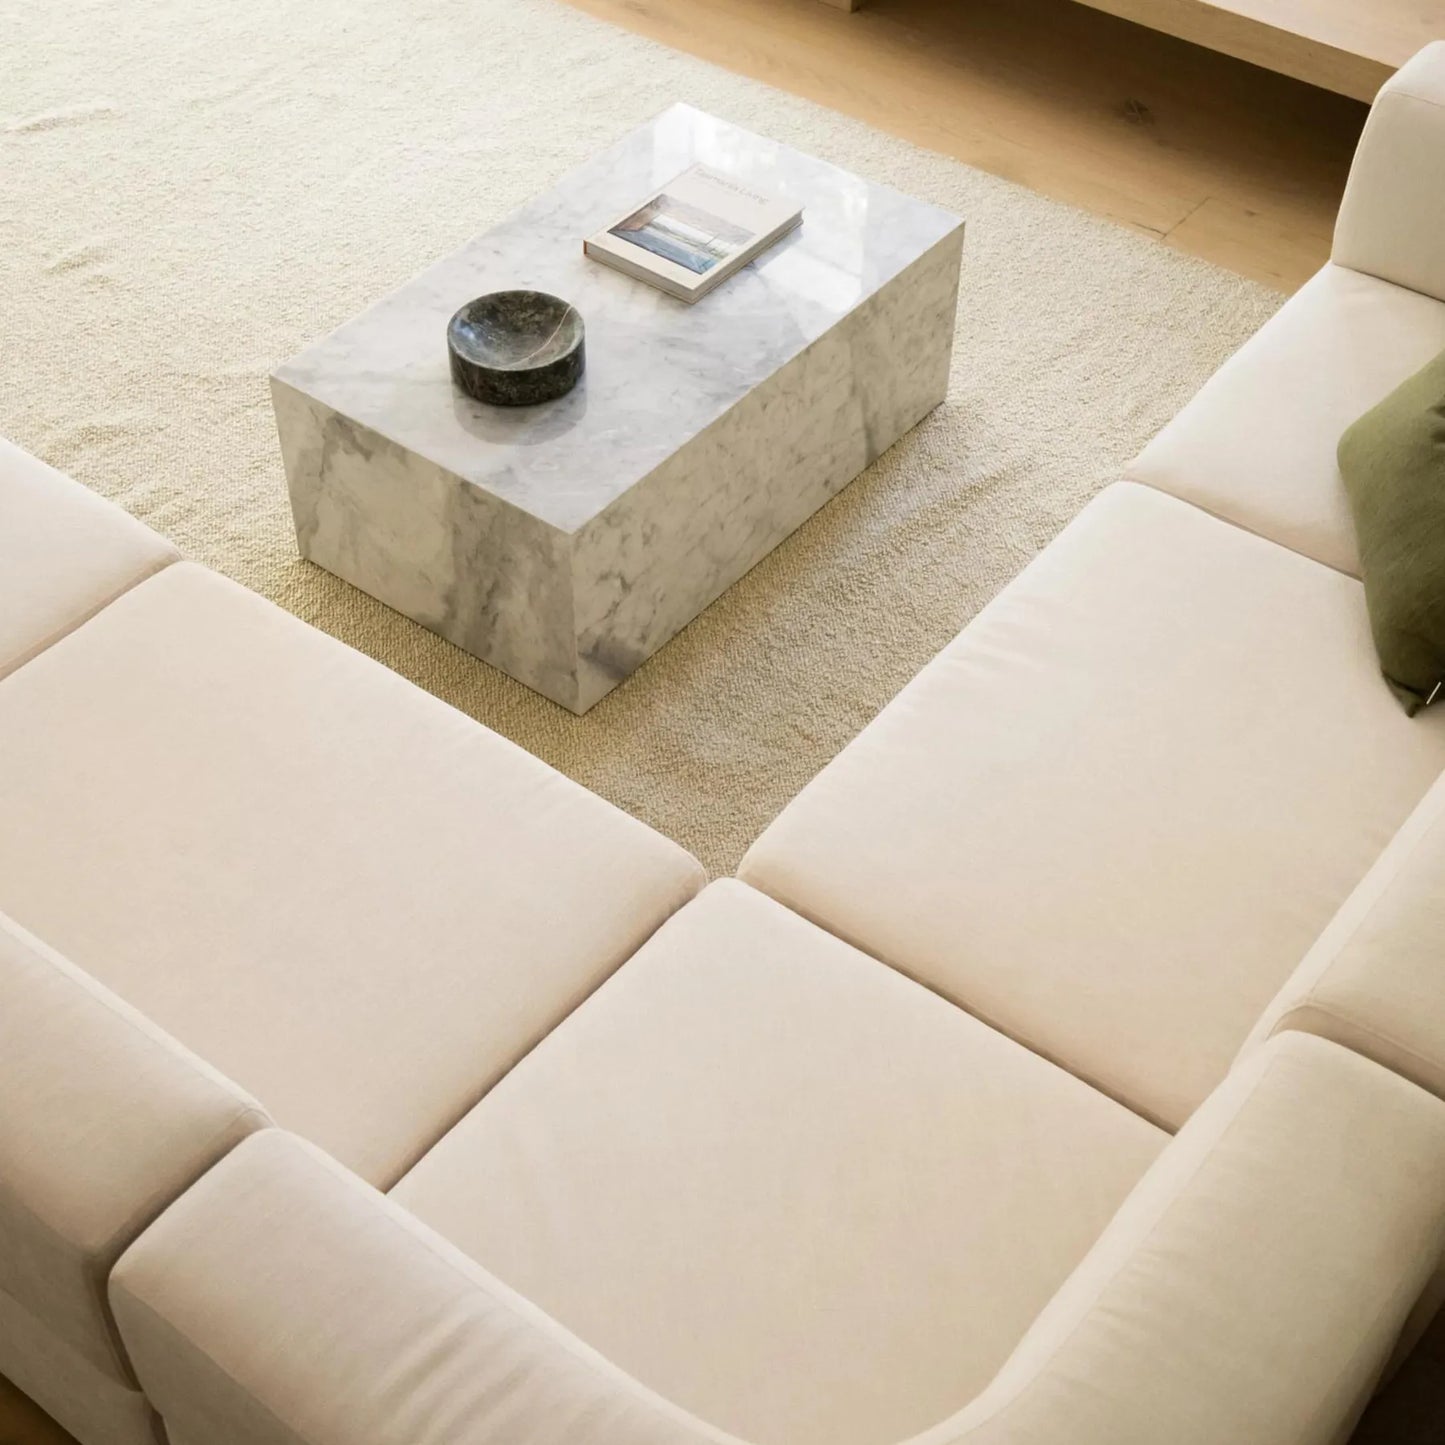 Stretch Corner Sofa - Silex Off White